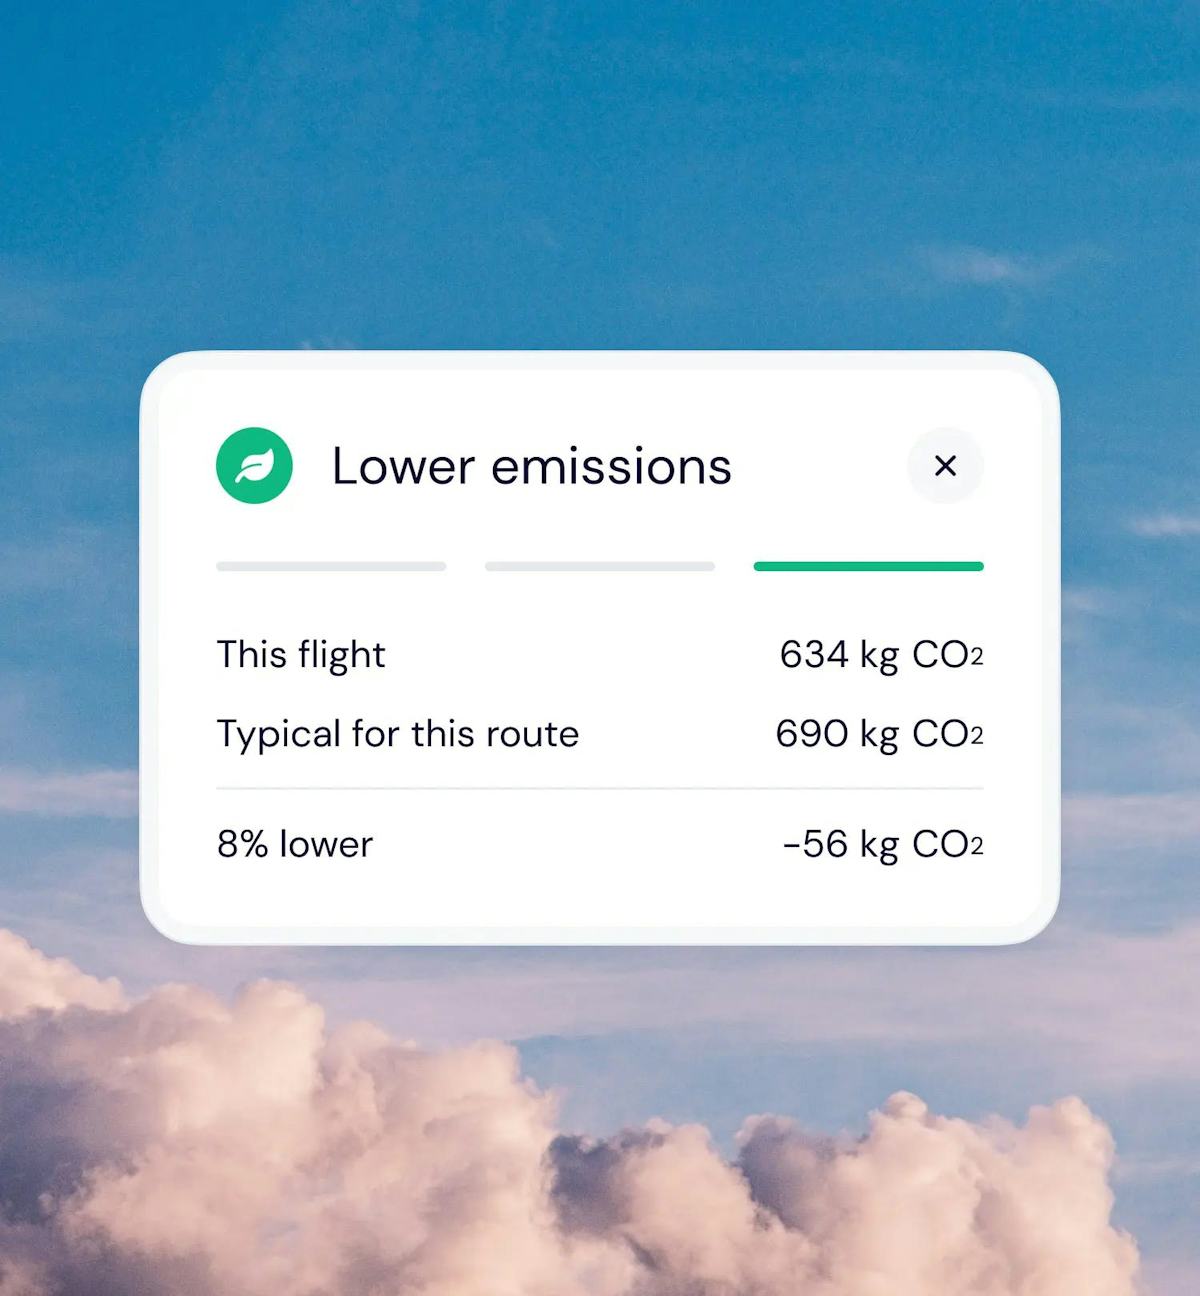 Lower emissions